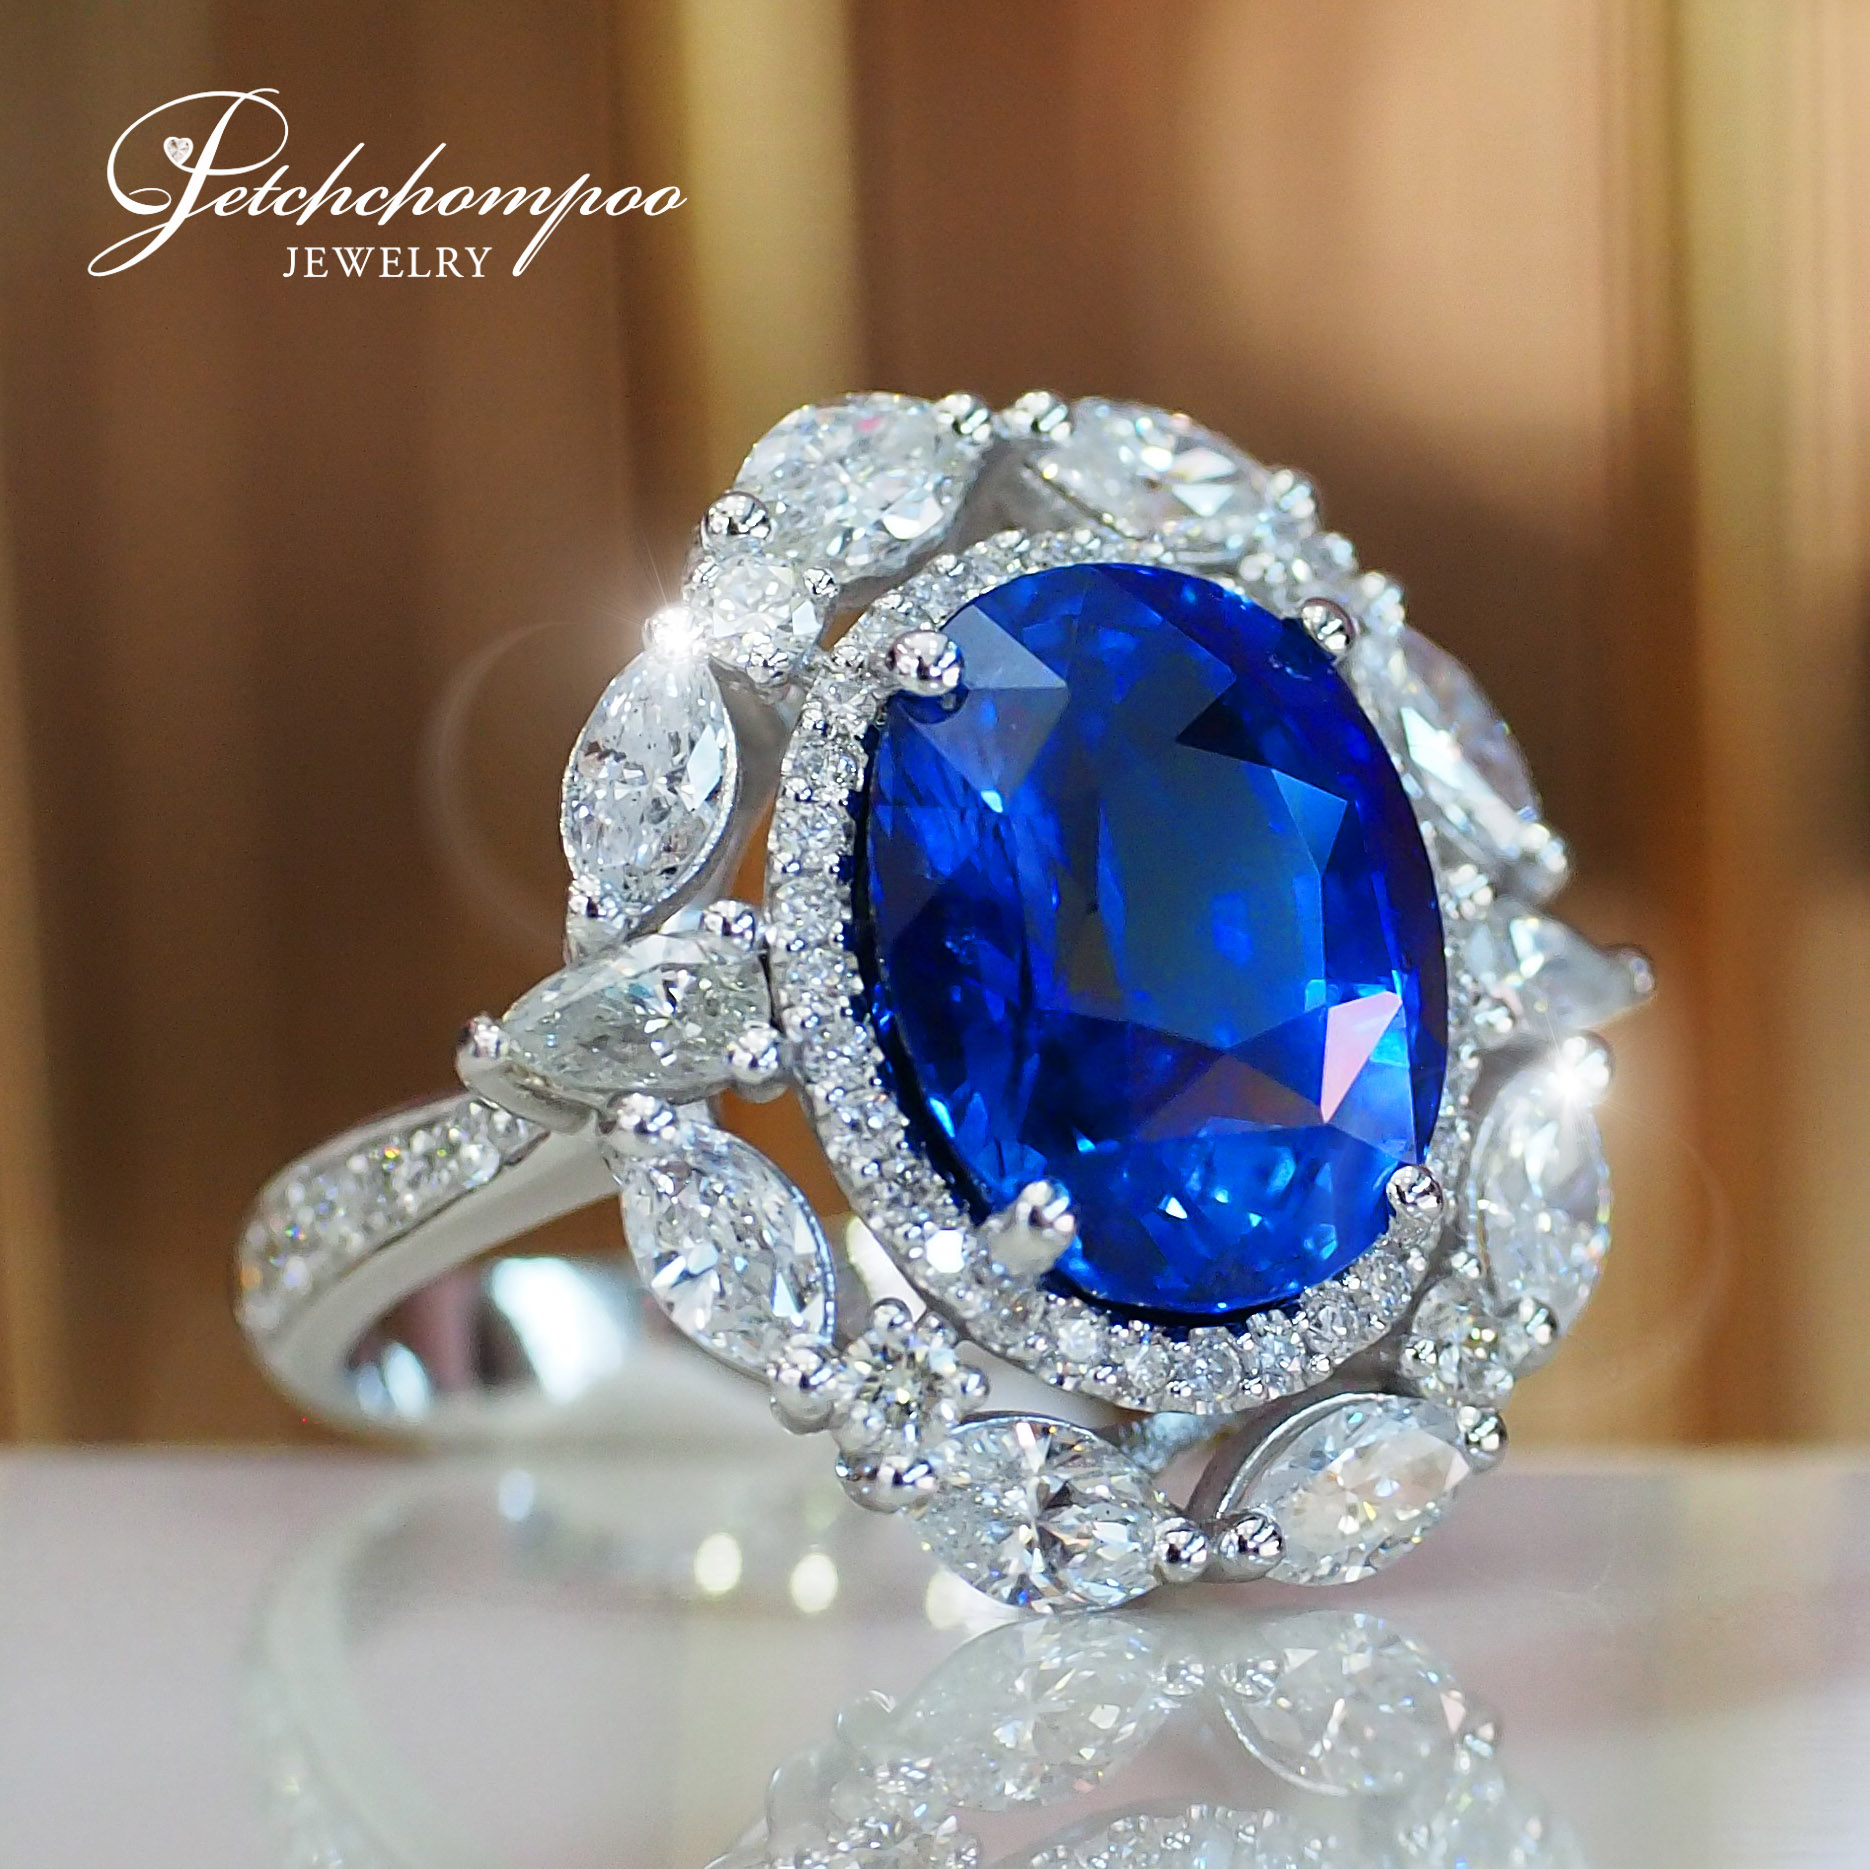 [27121] Ceylon sapphire ring 8.82 carats  690,000 